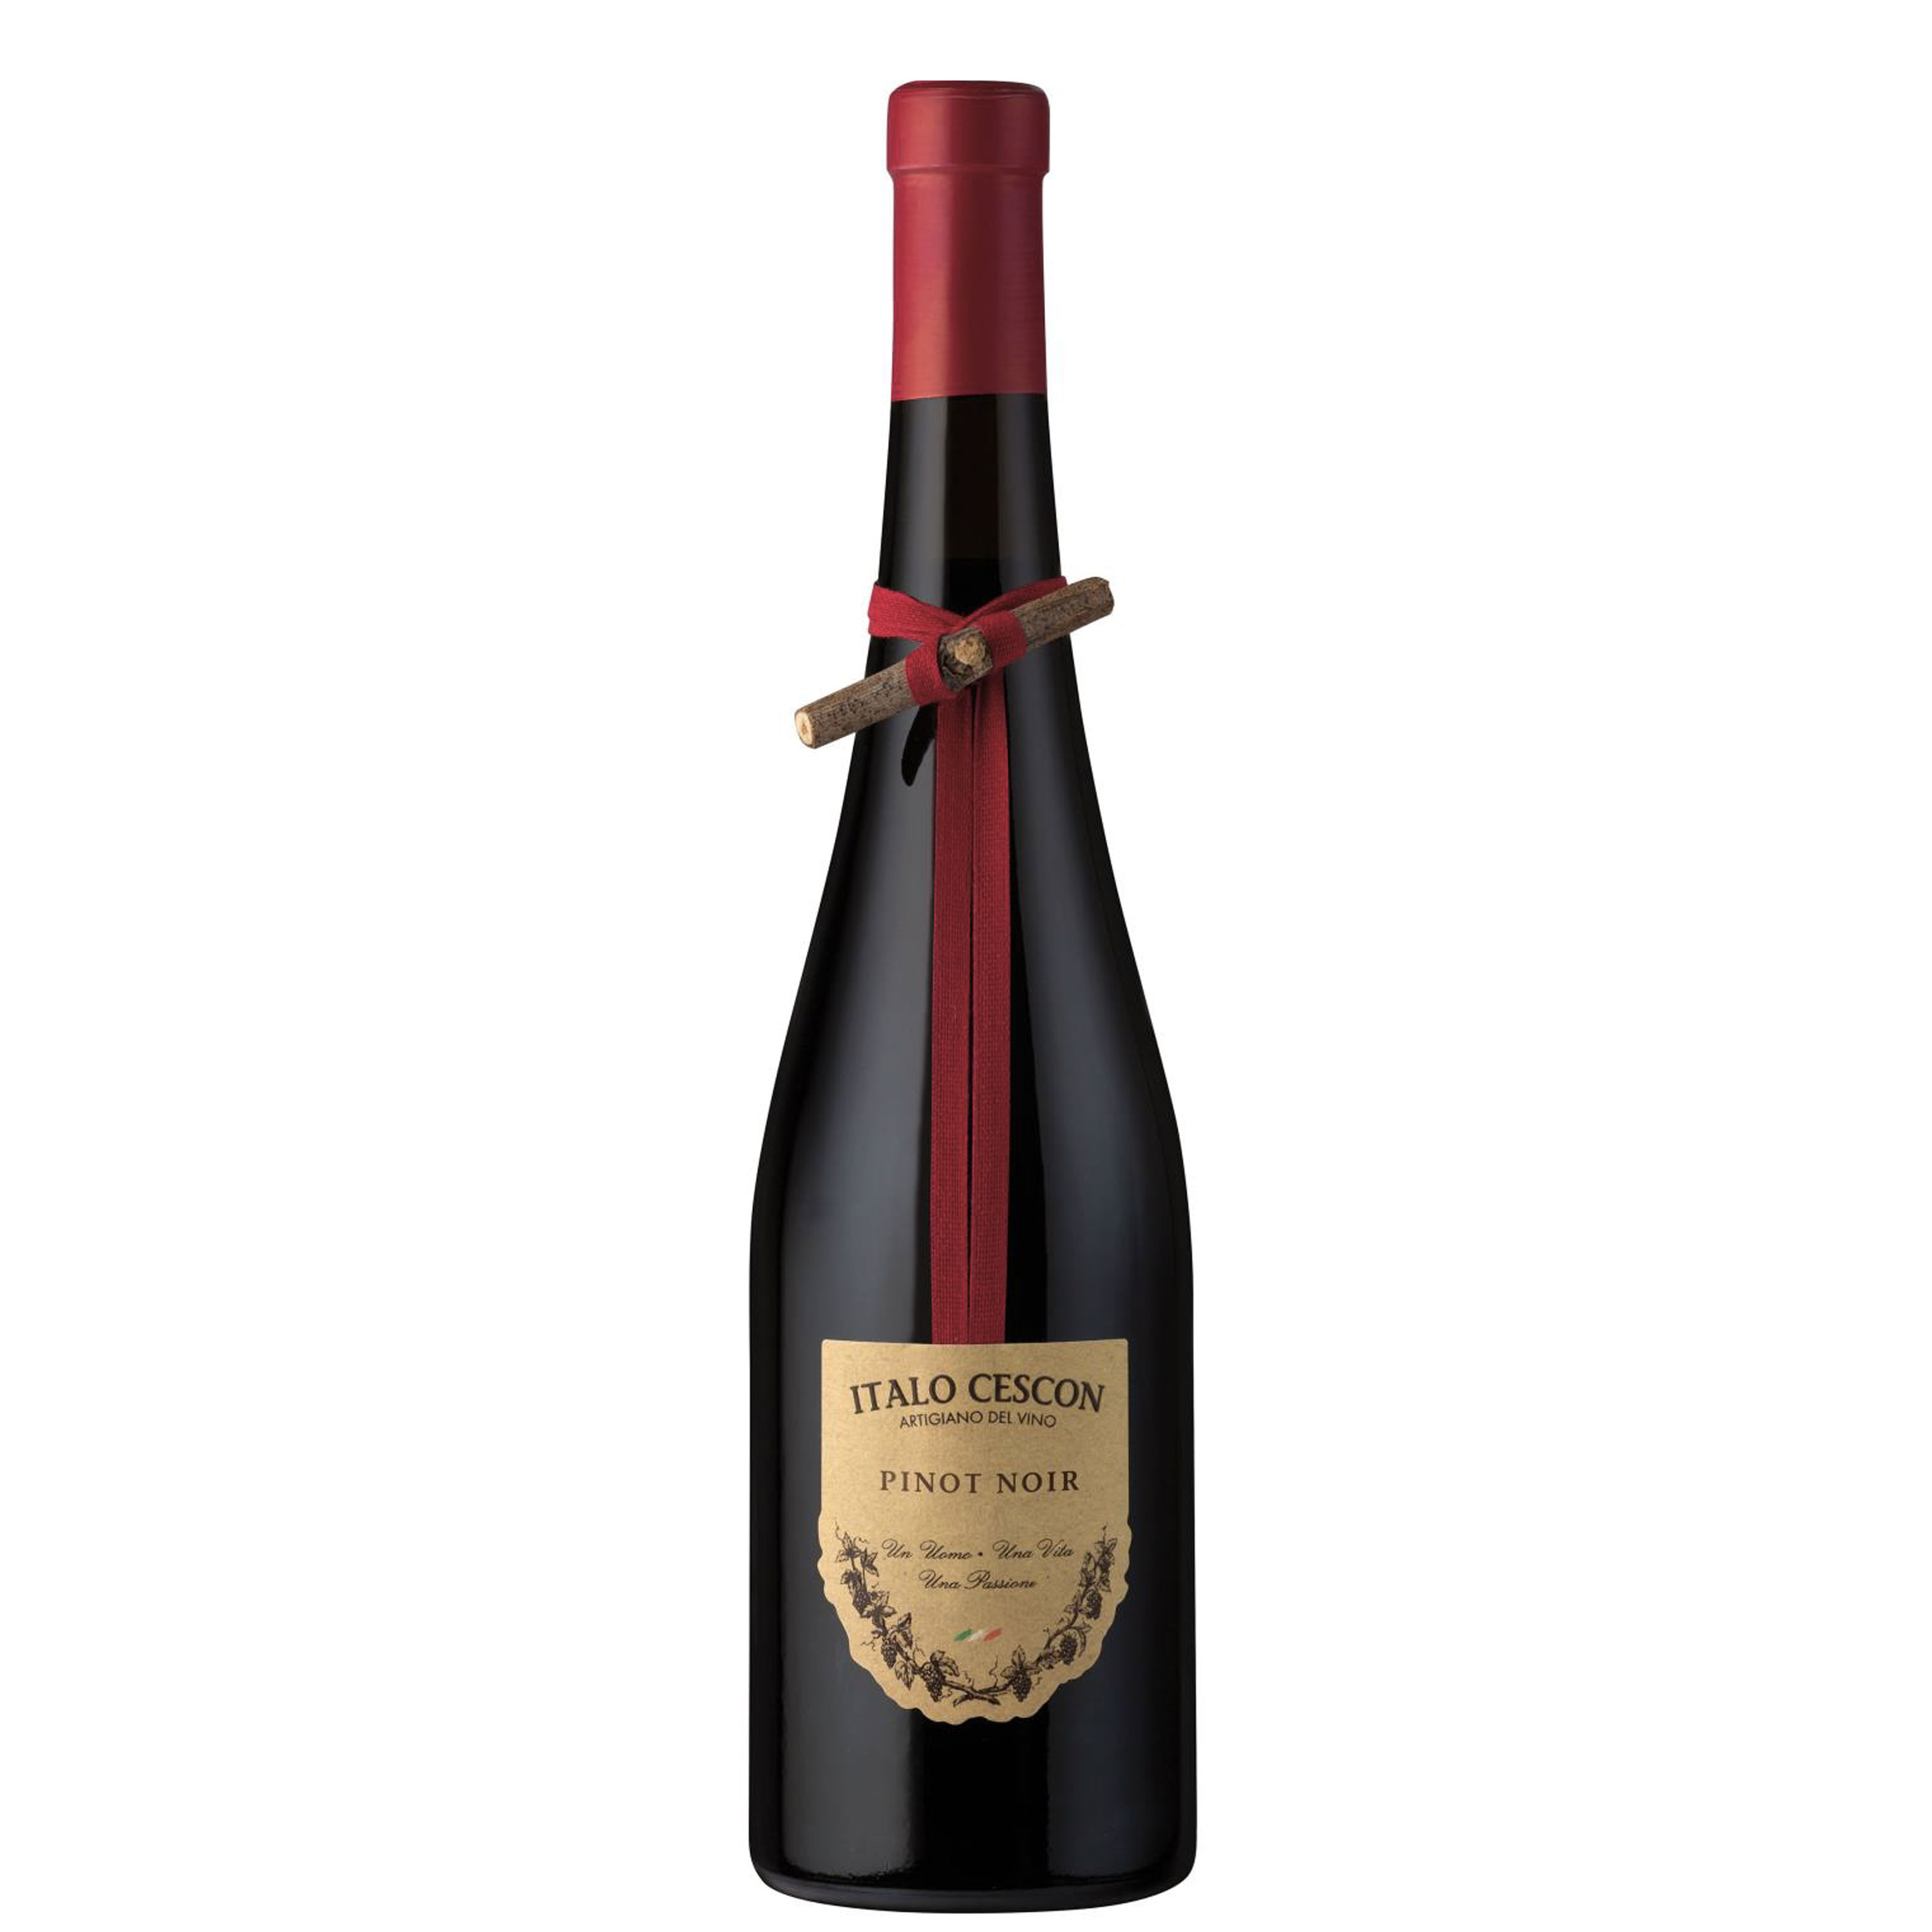 Veneto Pinot Nero Igt Il Tralcetto 2020